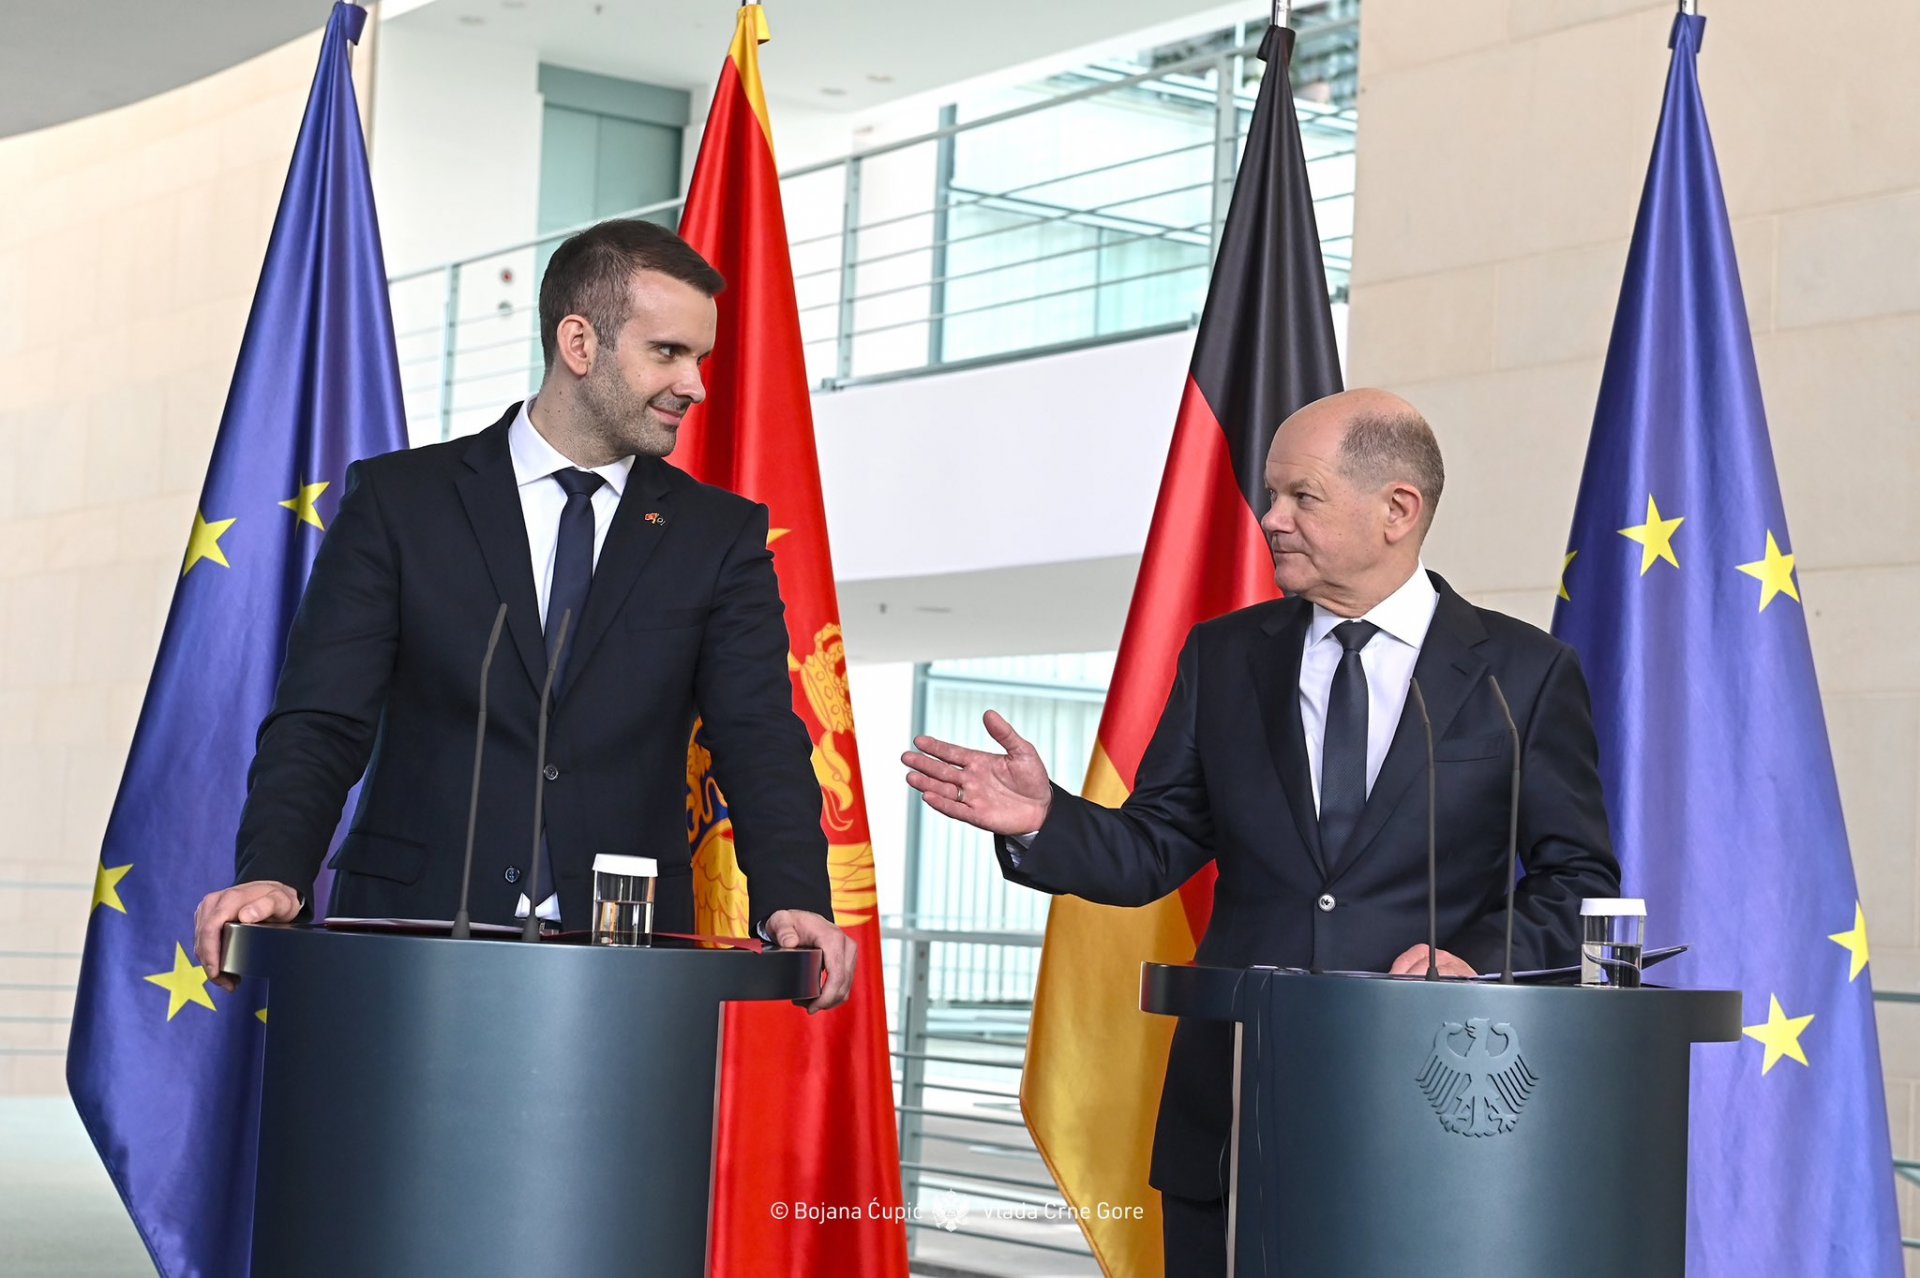 Spajić: Crna Gora ima sad i zvanično punu podršku Njemačke da postane 28. članica EU do 2028.